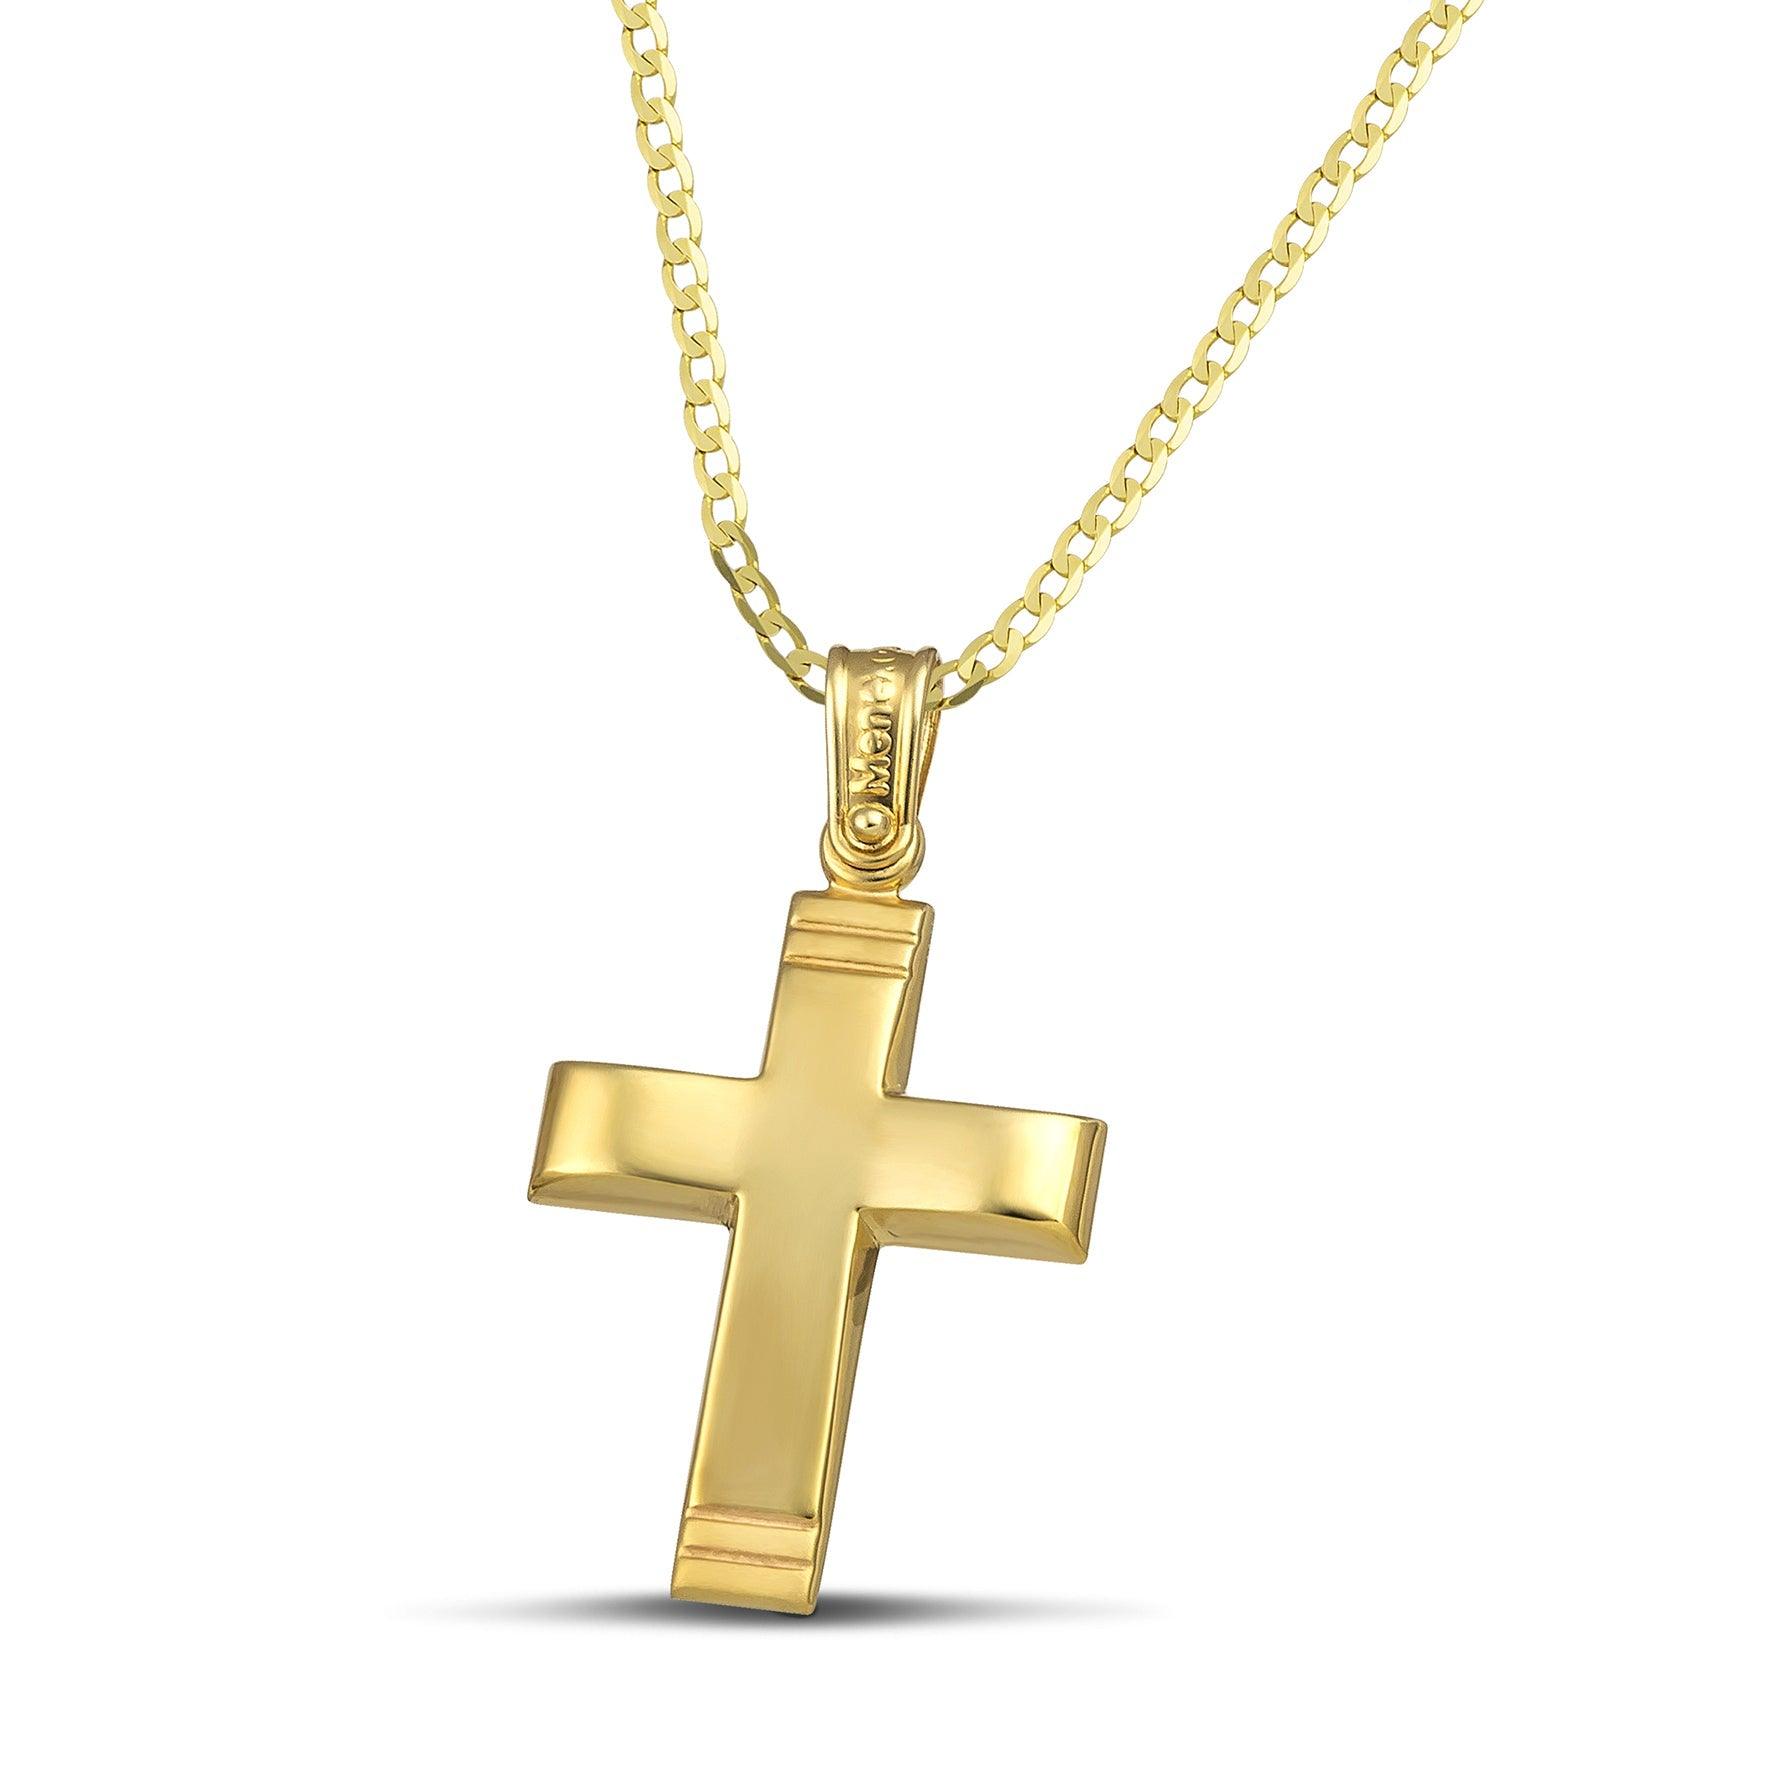 Χρυσός σταυρός Κ14 μίνιμαλ, λουστράτος. Φορεμένος σε κλασσική αλυσίδα.